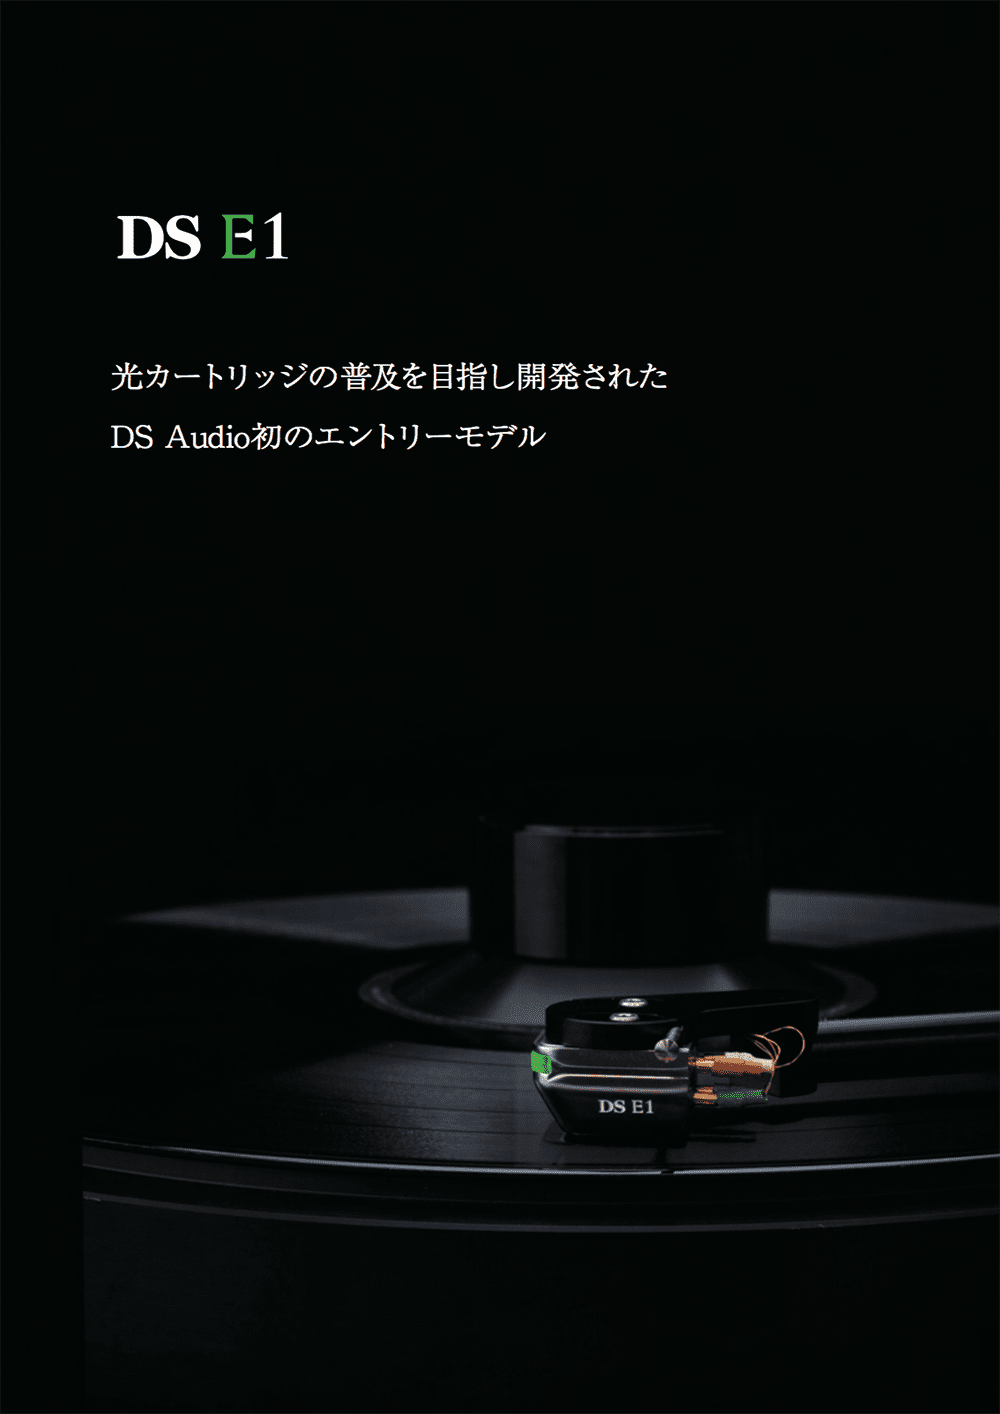 DS-E1 catalog